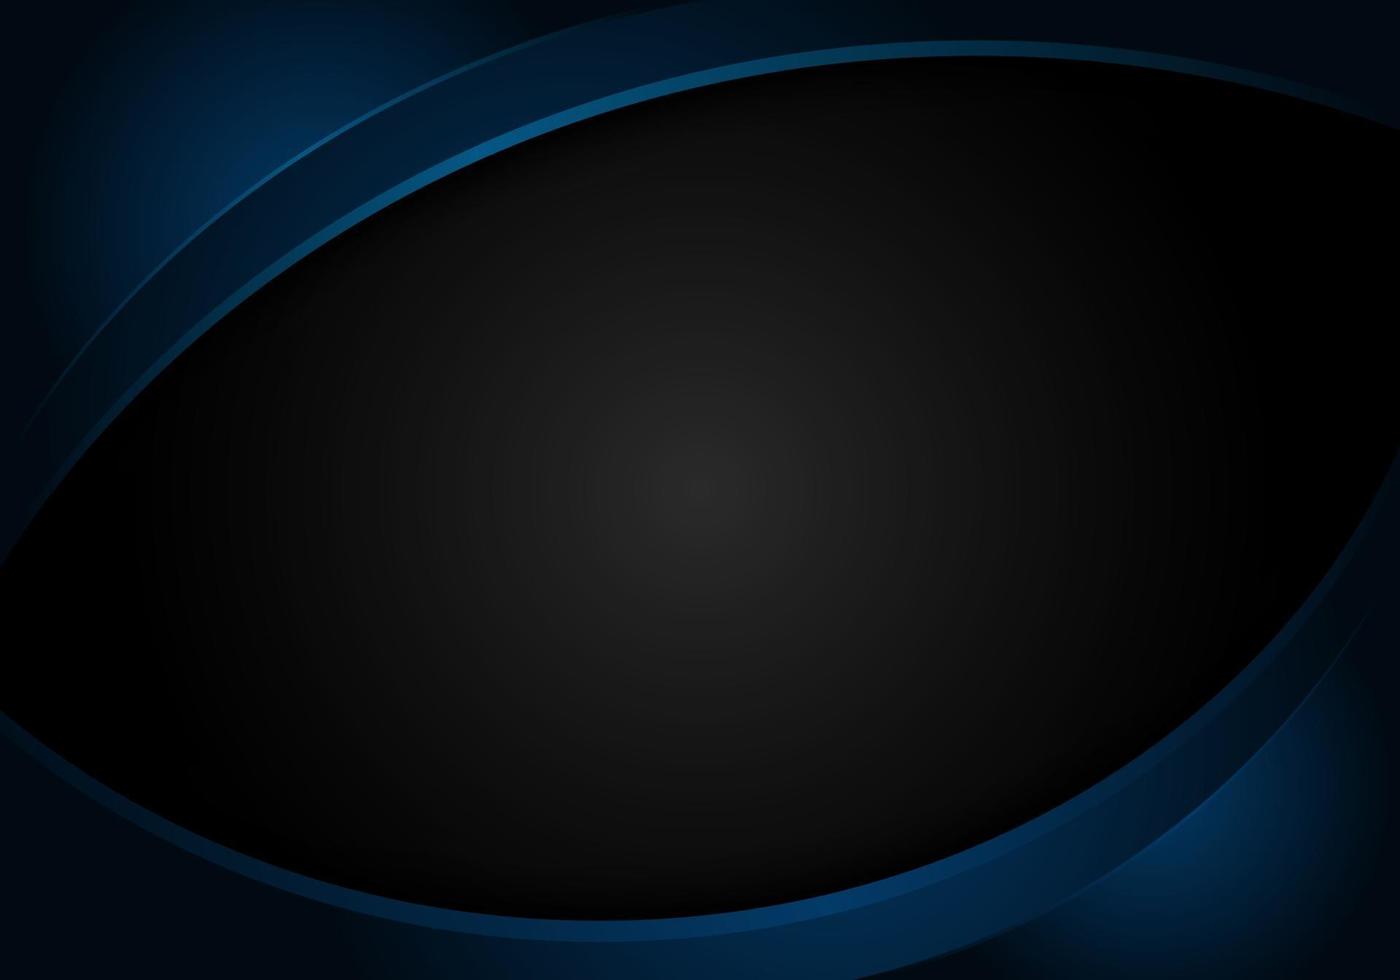 forma de curva abstrato azul brilhante em modelo de design corporativo de fundo preto vetor